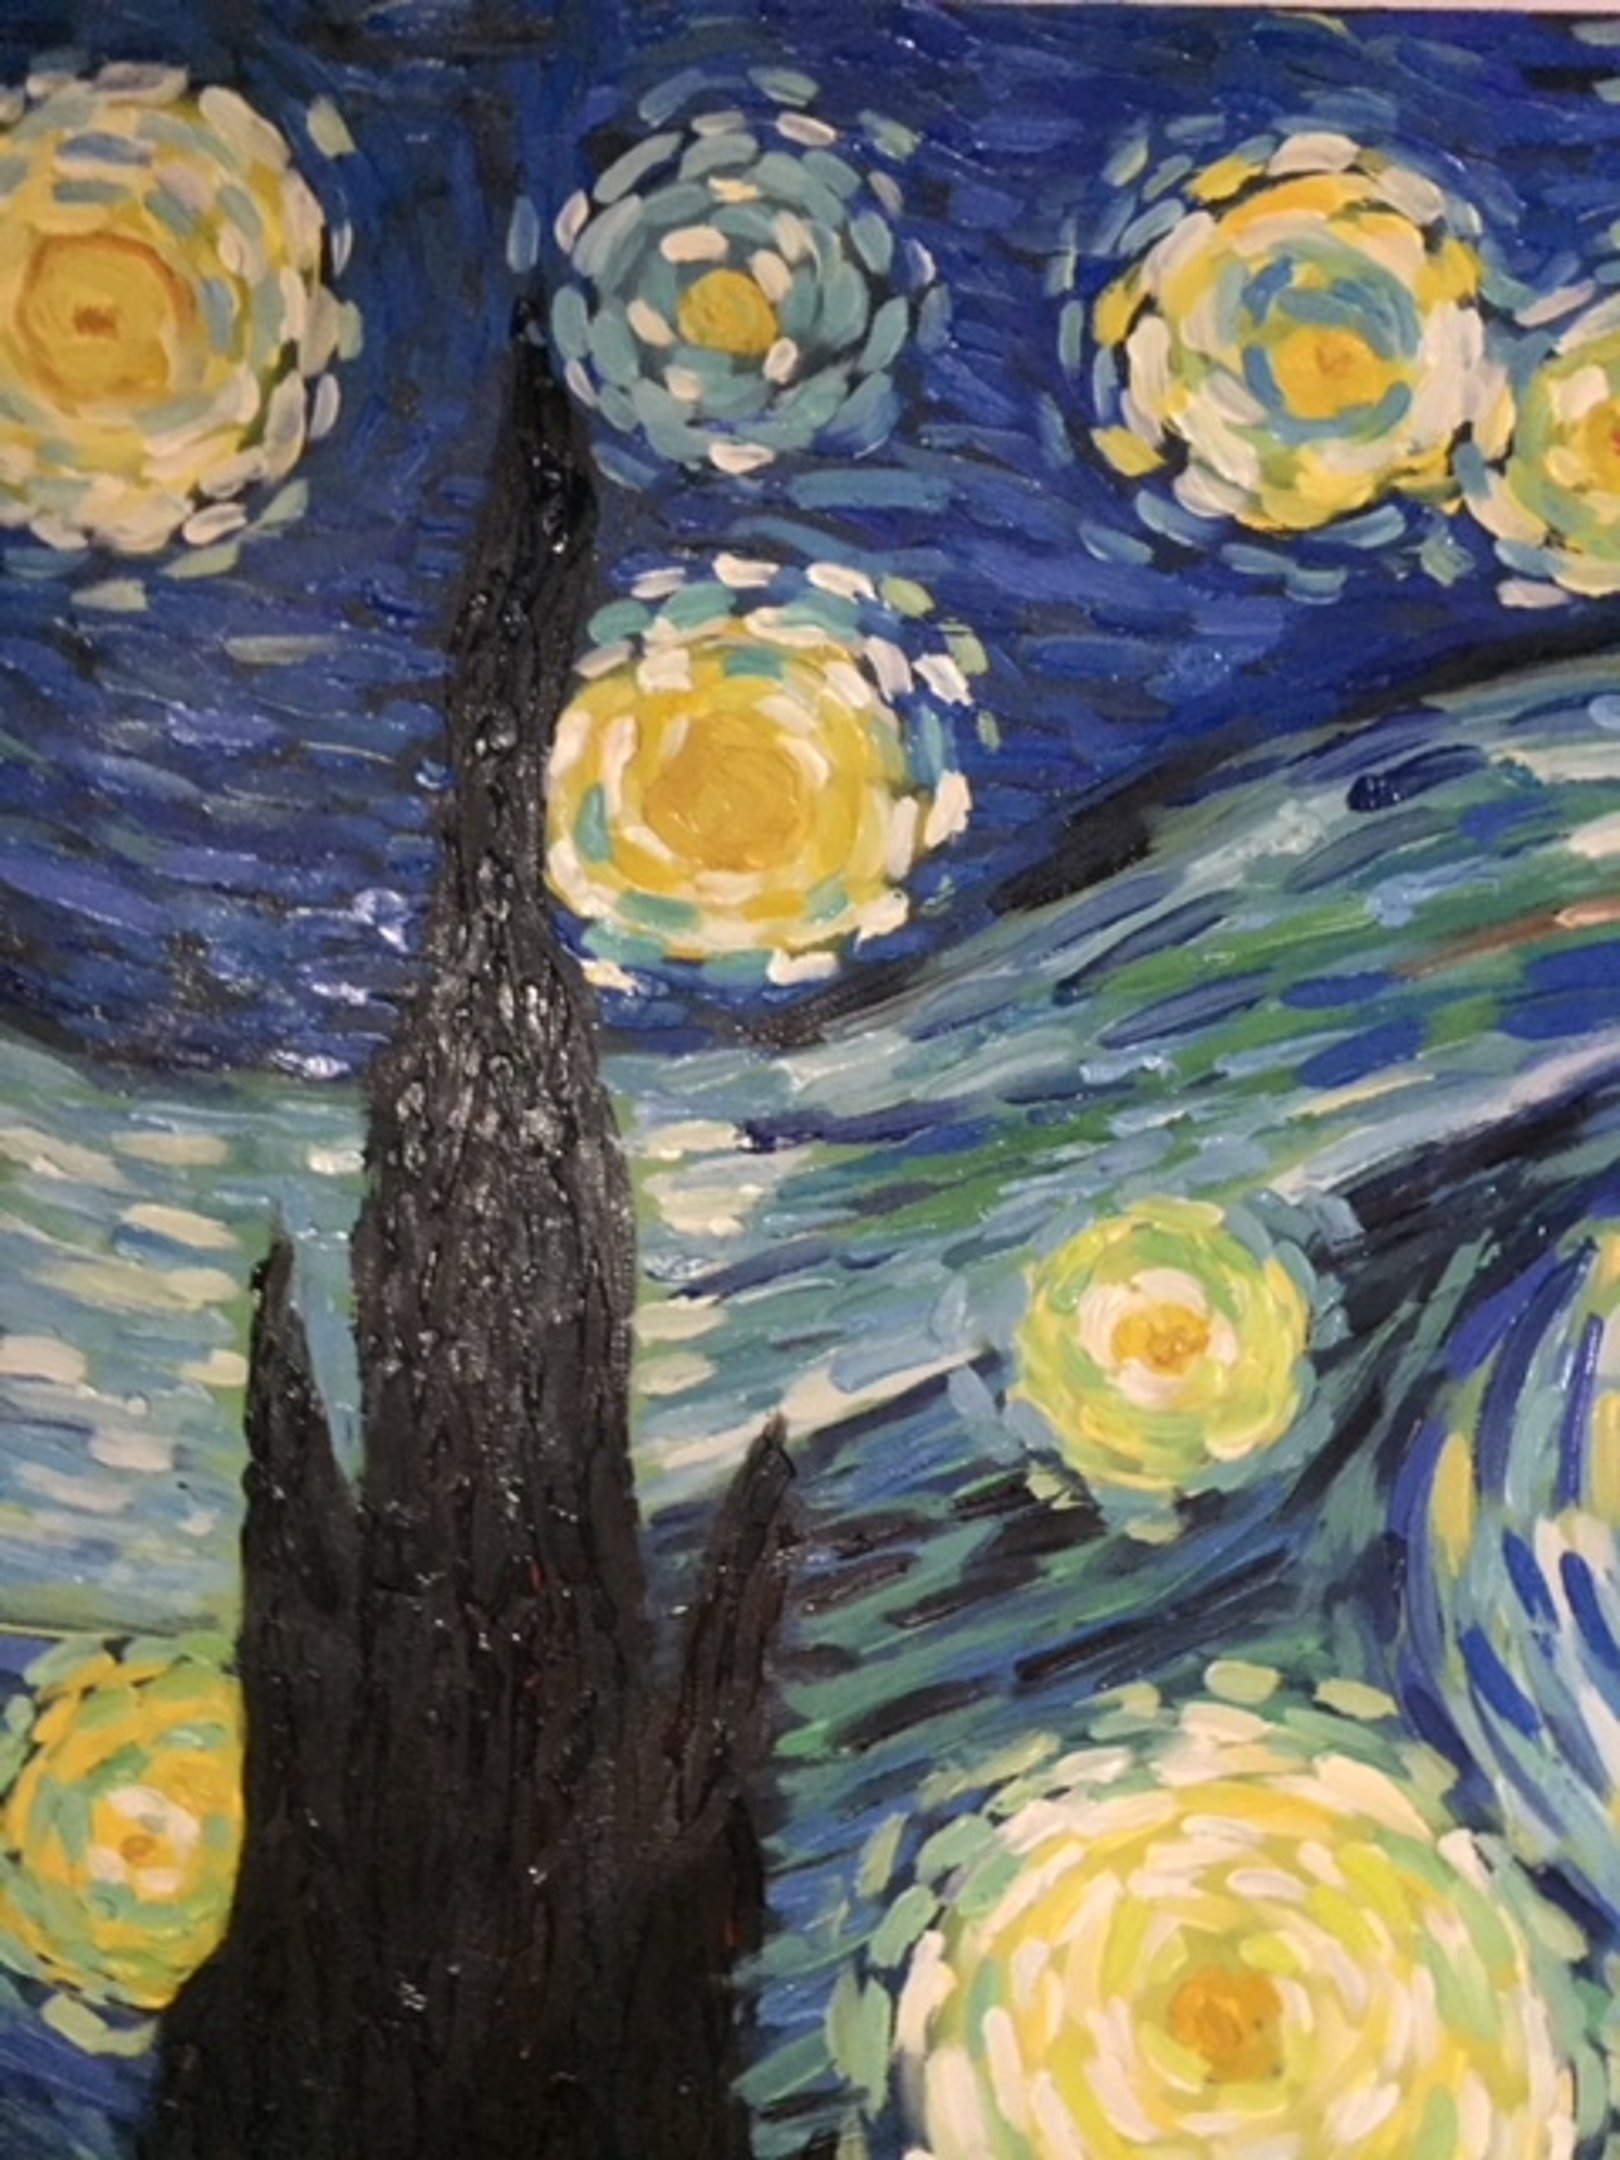 Niik Stampa Notte Stellata di Vincent Van Gogh 60 x 47 cm Falso dautore su Tela 